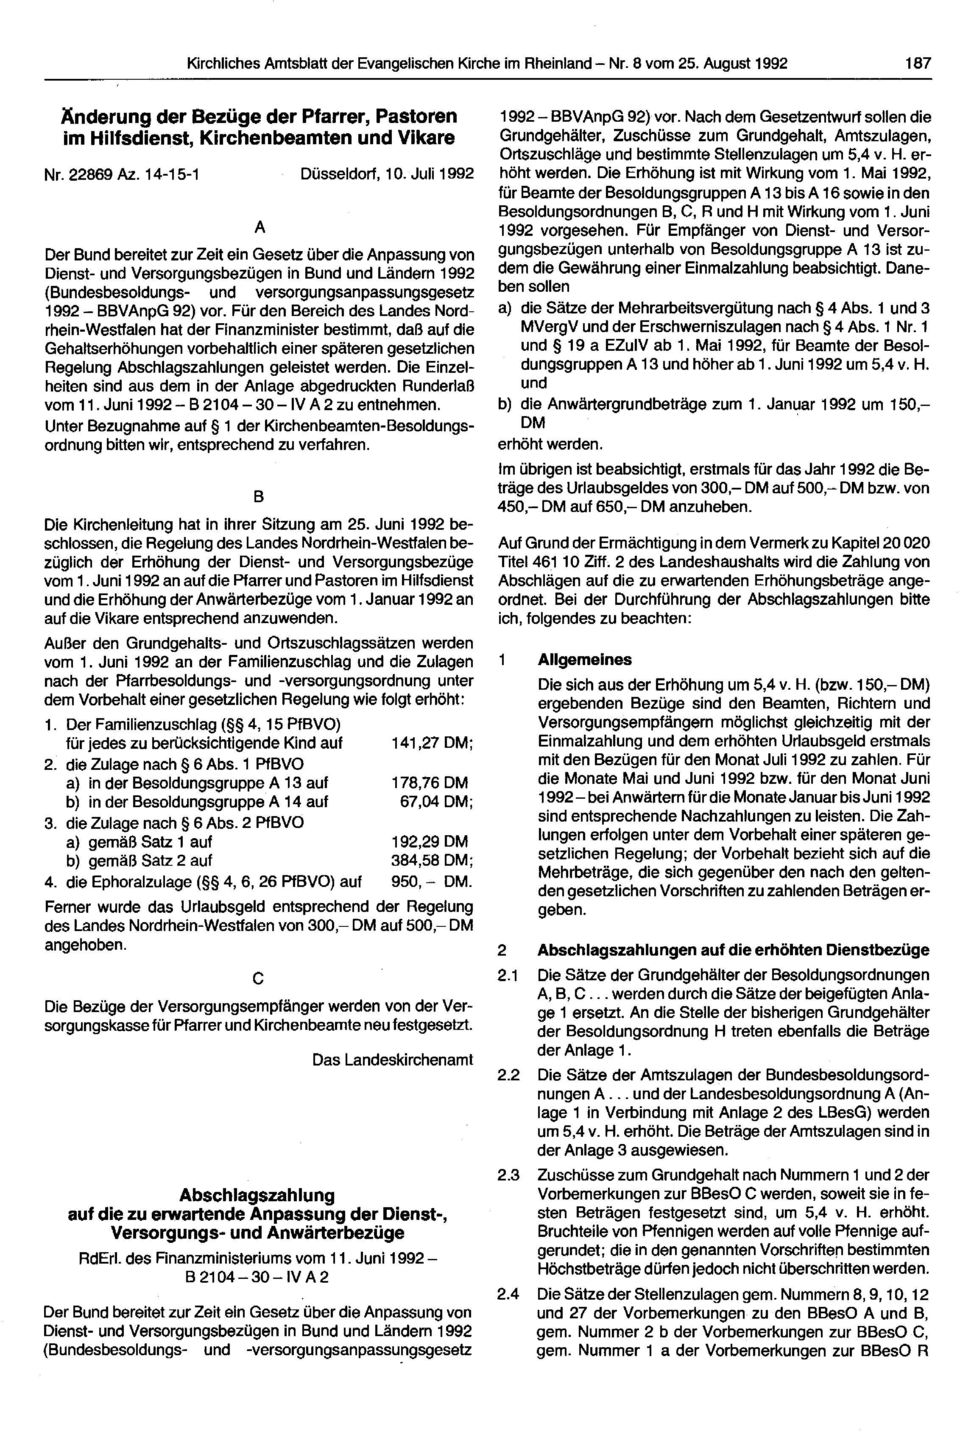 Juli 1992 A Der Bund bereitet zurzeit ein Gesetz über die Anpassung von Dienst- und Versorgungsbezügen in Bund und Ländem 1992 (Bundesbesoldungs- und versorgungsanpassungsgesetz 1992 - BBVAnpG 92)